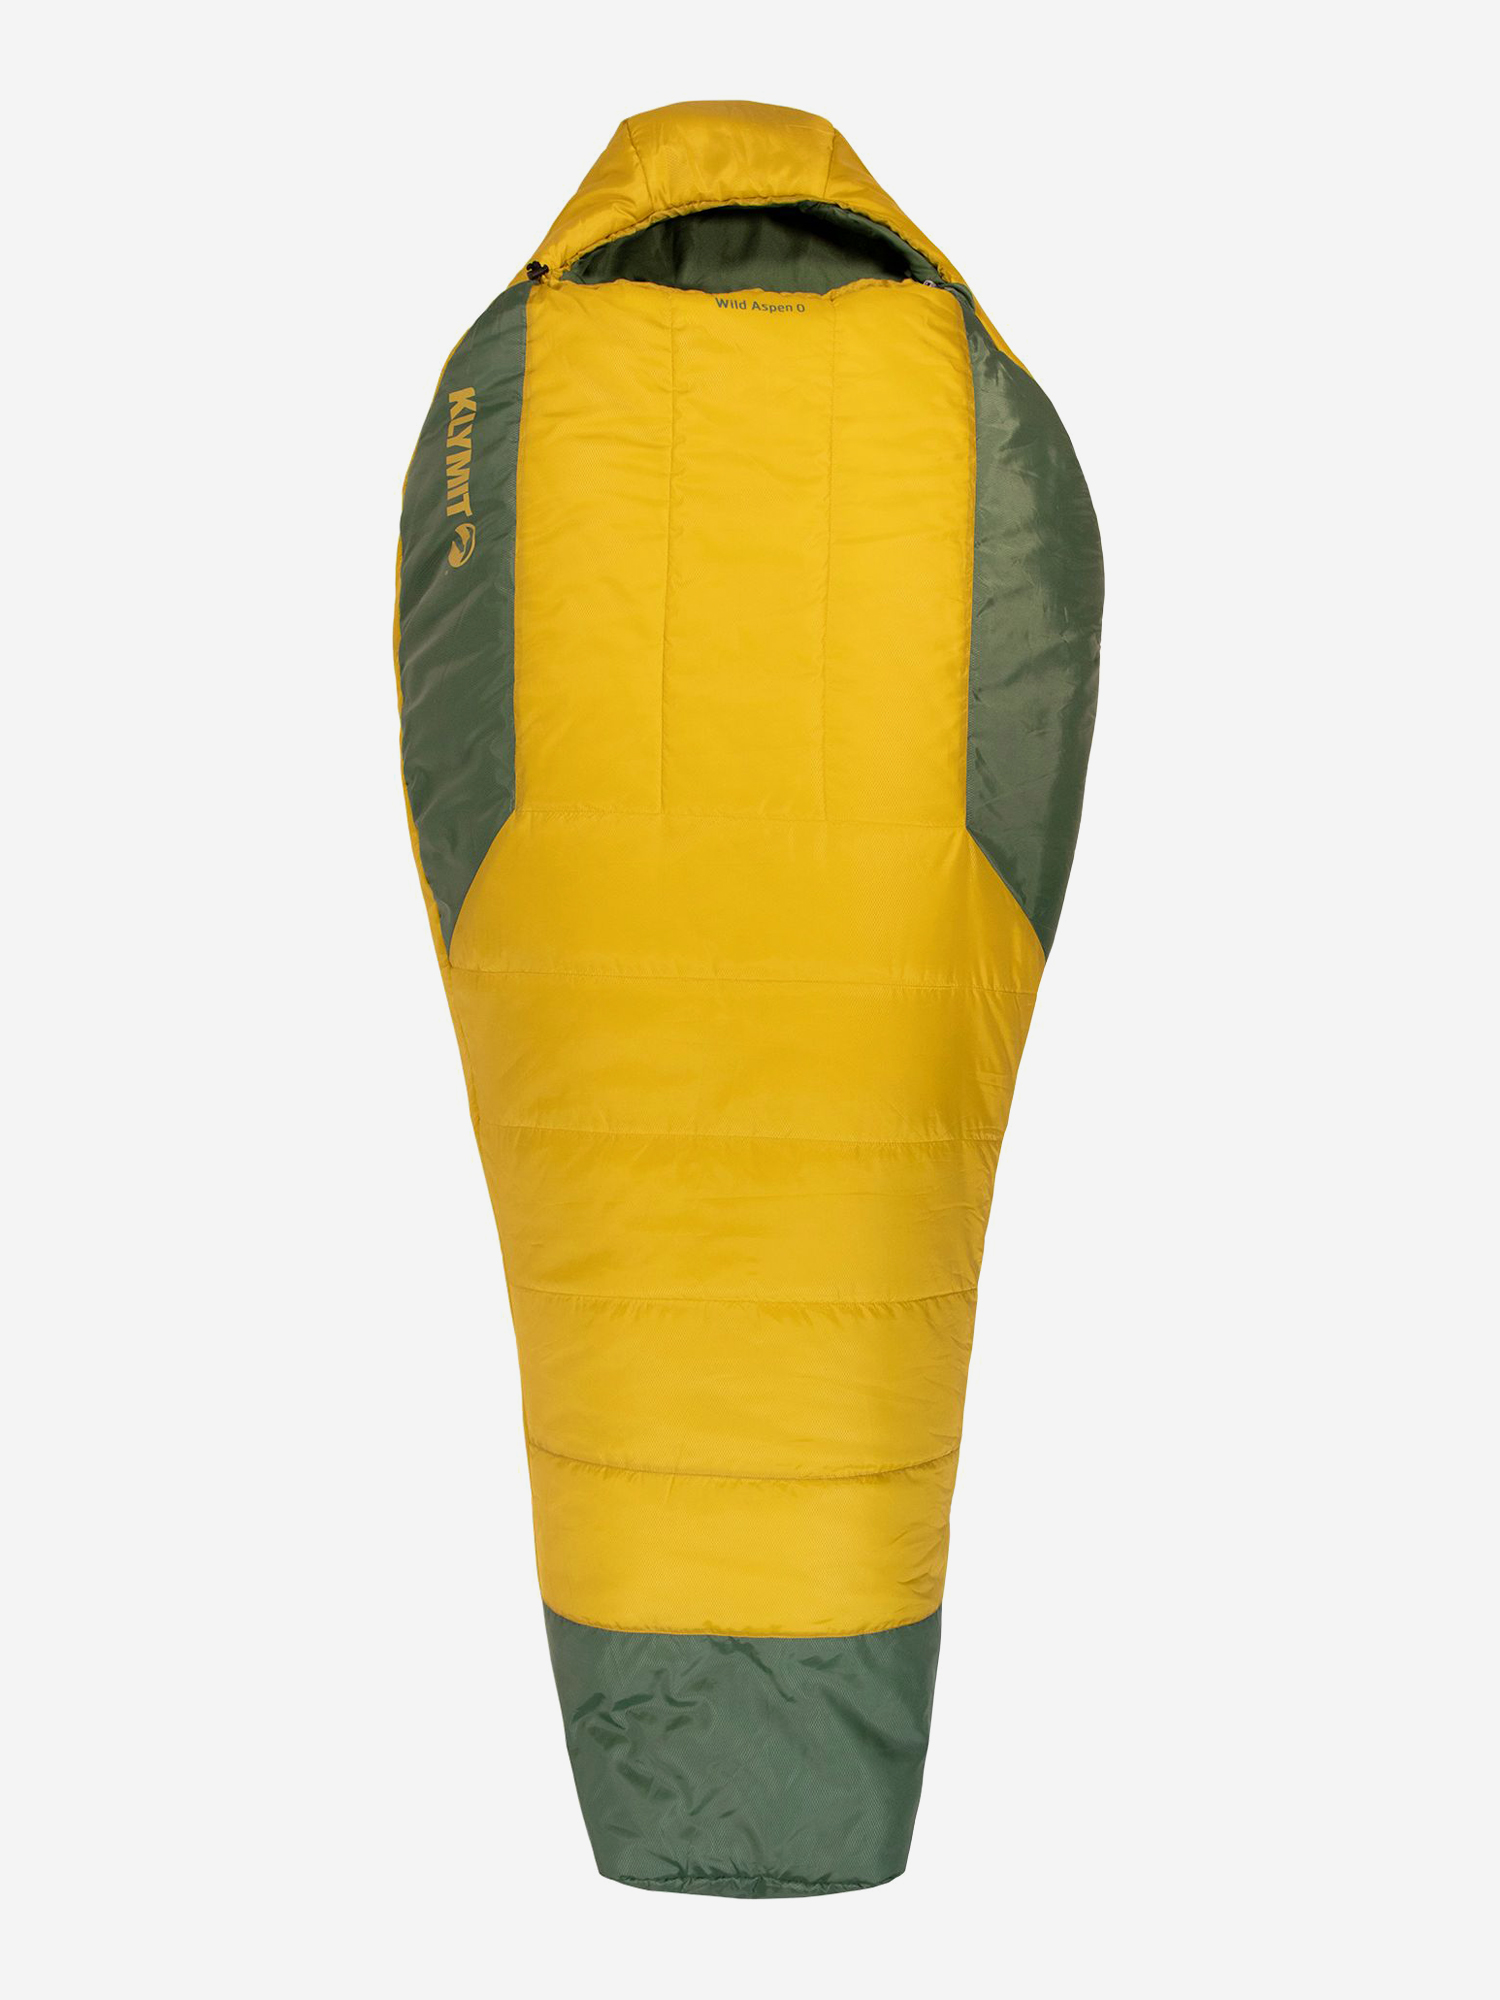 Спальный мешок KLYMIT Wild Aspen 0 Extra Large (13WAYL00E) желто-зеленый, Желтый очки для плавания взрослые с зеркальными стёклами sportex b31549 a желто голубой